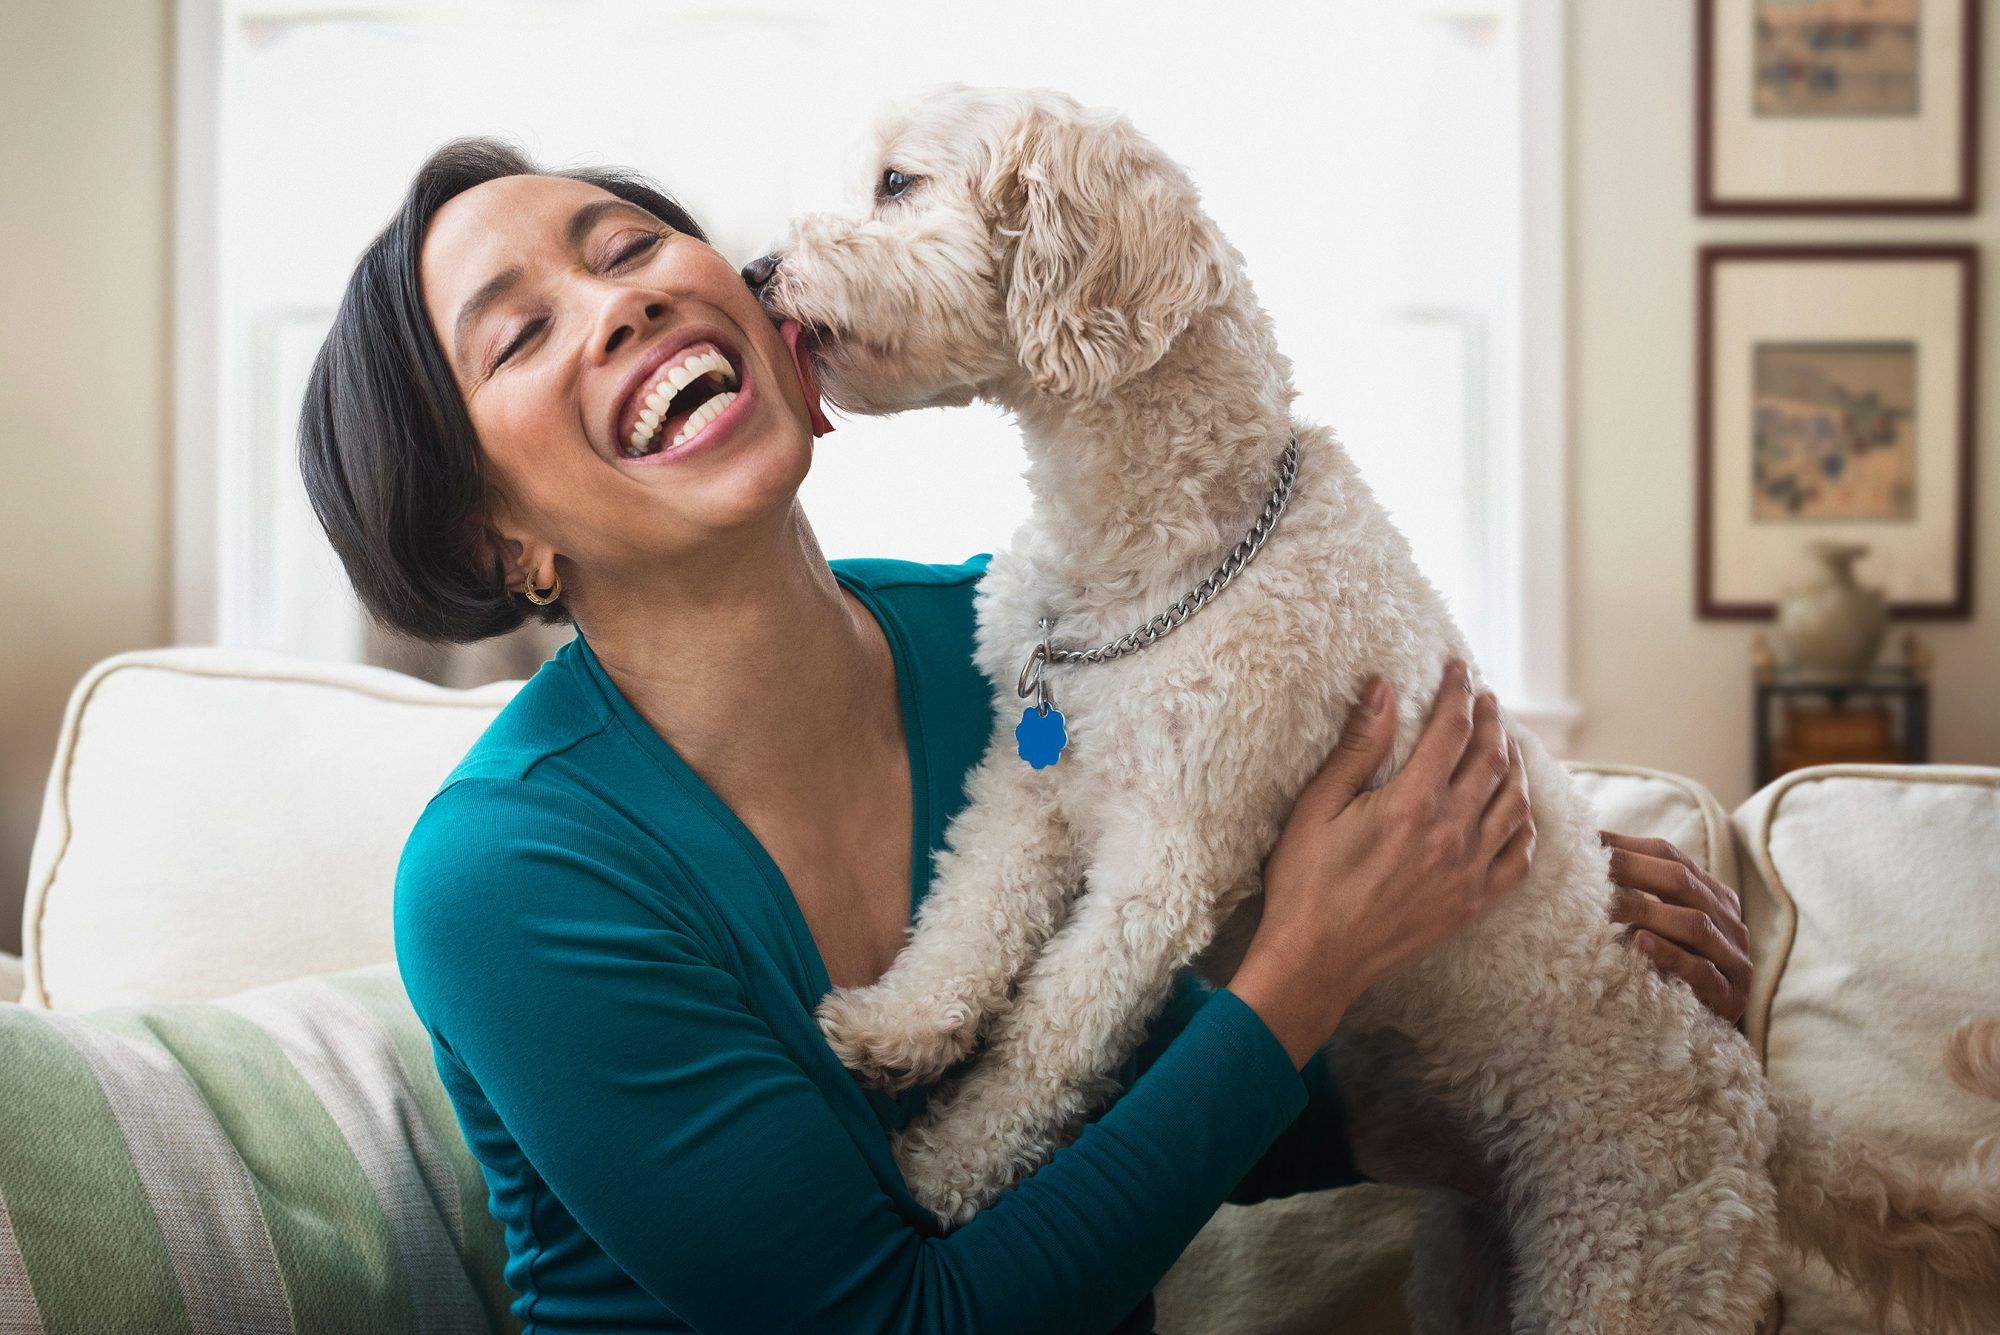 ნუ გექნებათ Hissy Fit: კვლევის თანახმად, ძაღლების პატრონები უფრო ბედნიერები არიან, ვიდრე კატების მფლობელები